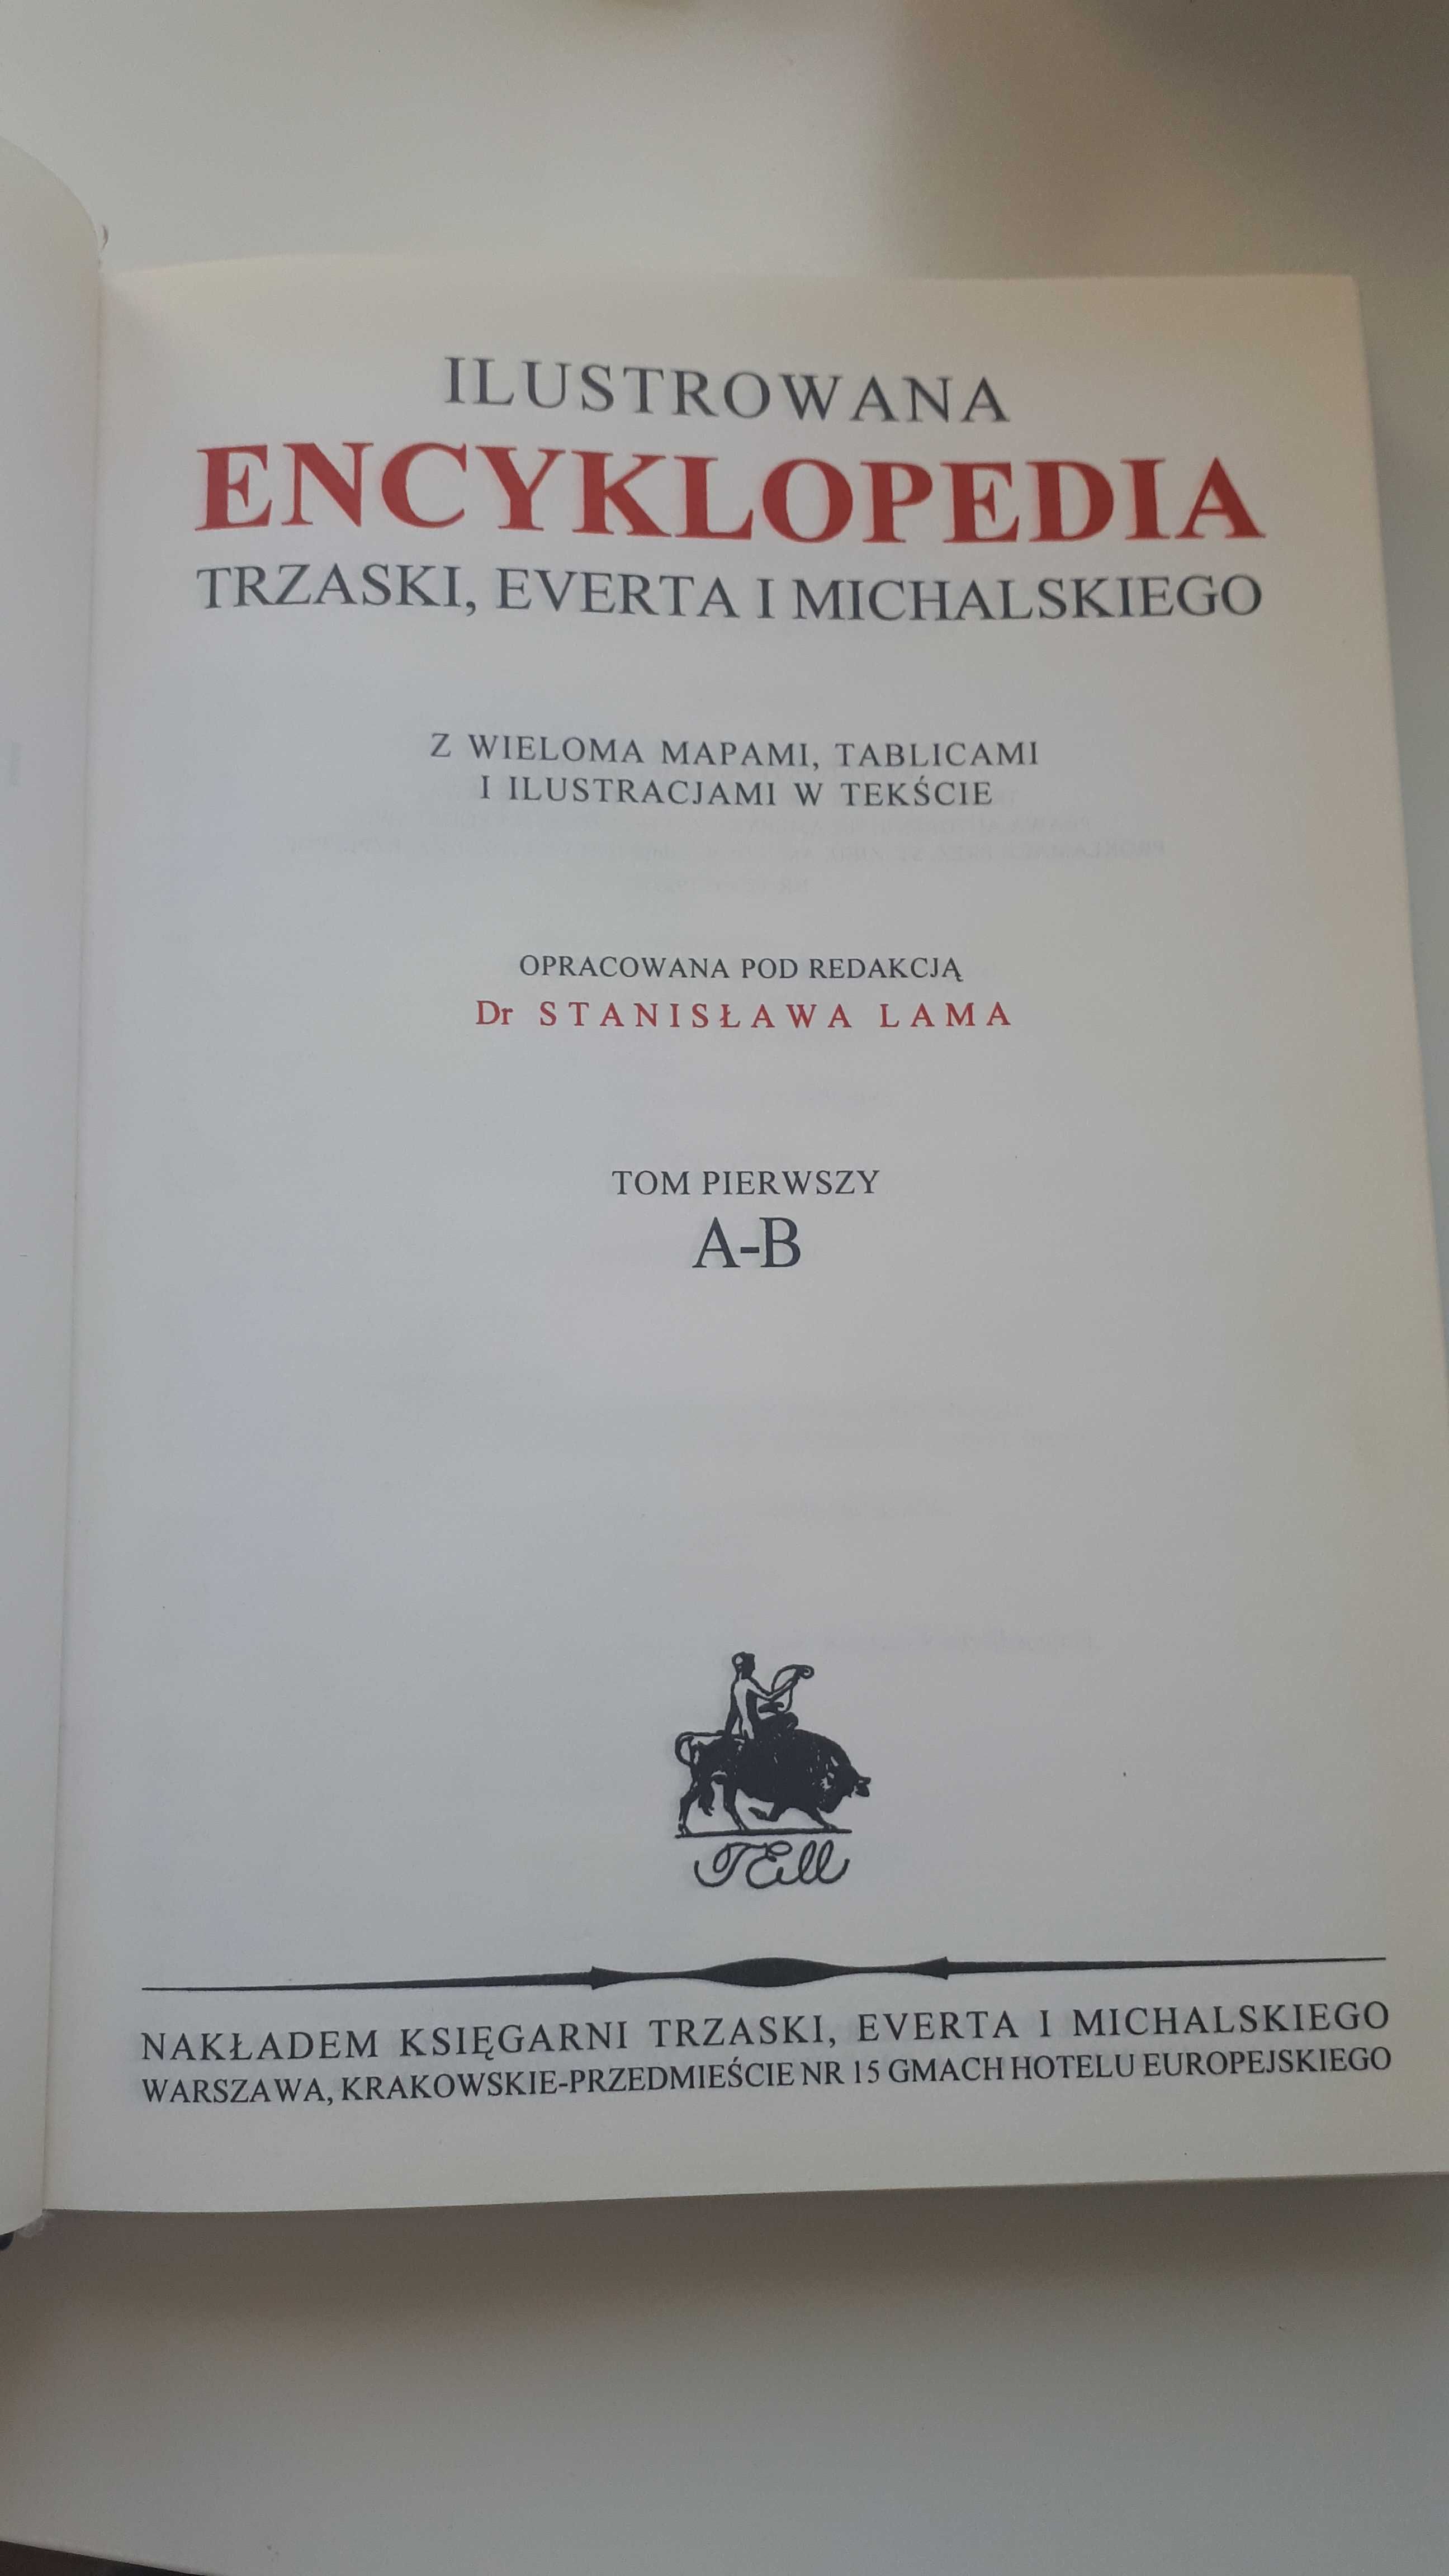 Ilustrowana Encyklopedia Trzaski, Everta i Michalskiego